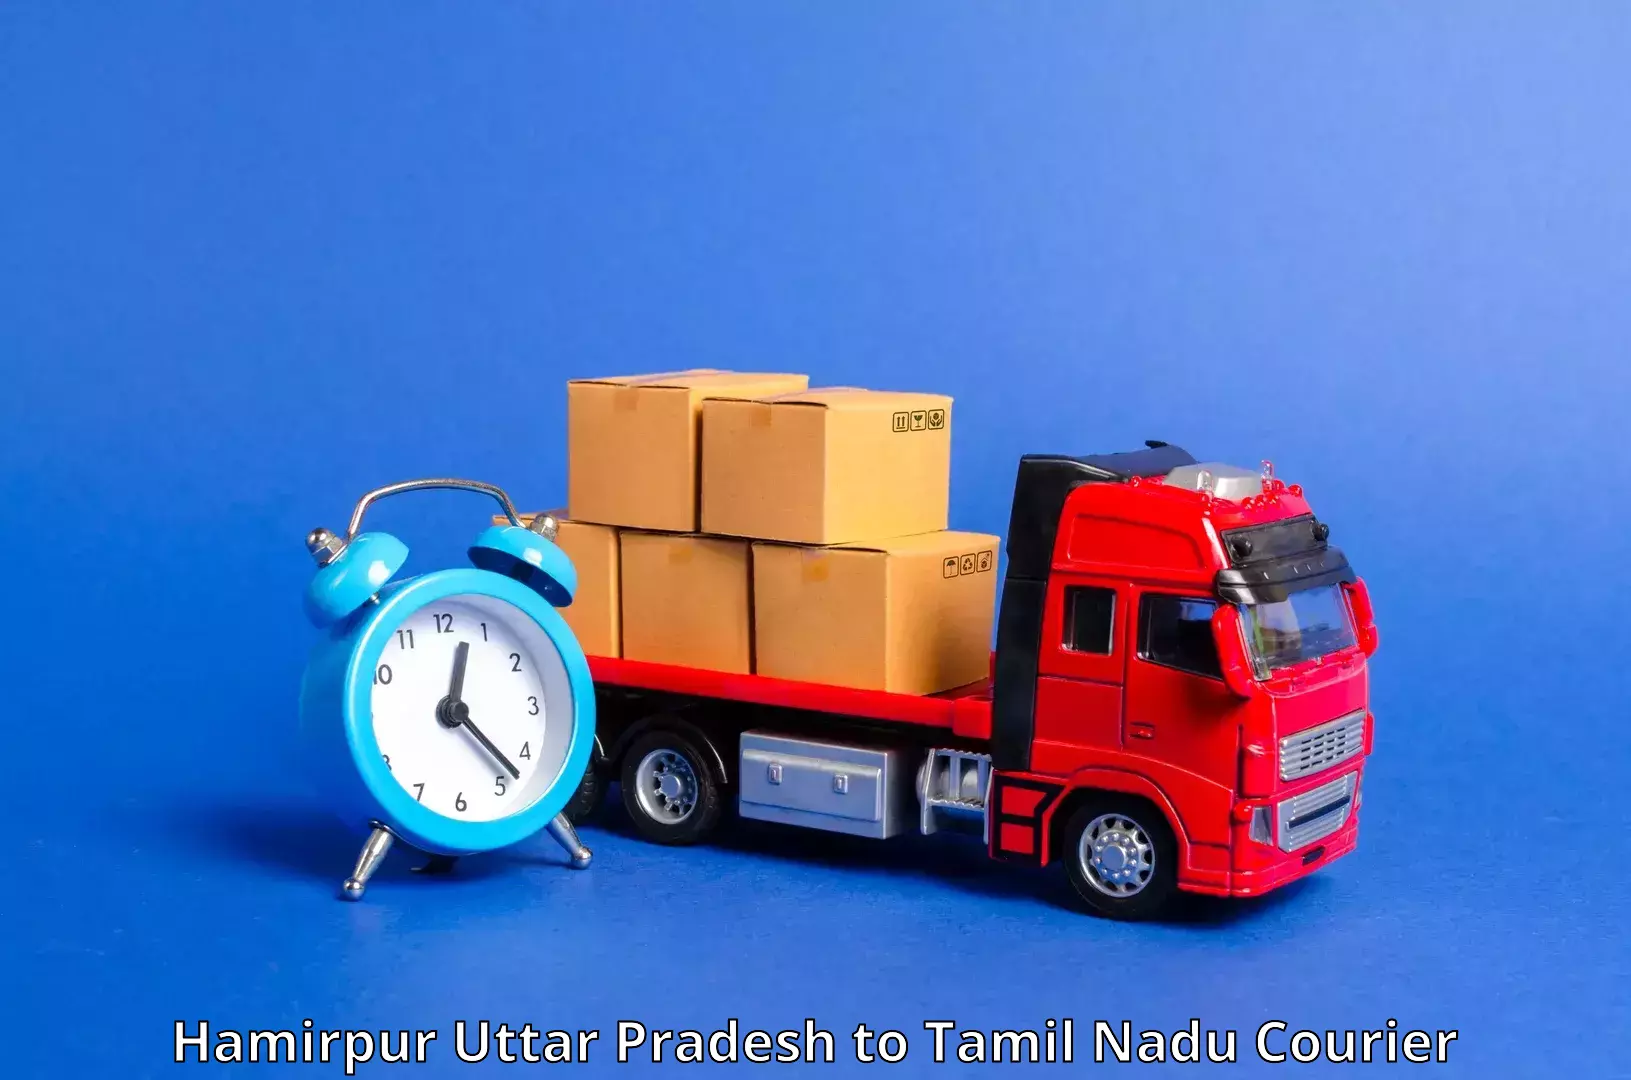 Customer-friendly courier services Hamirpur Uttar Pradesh to IIIT Tiruchirappalli